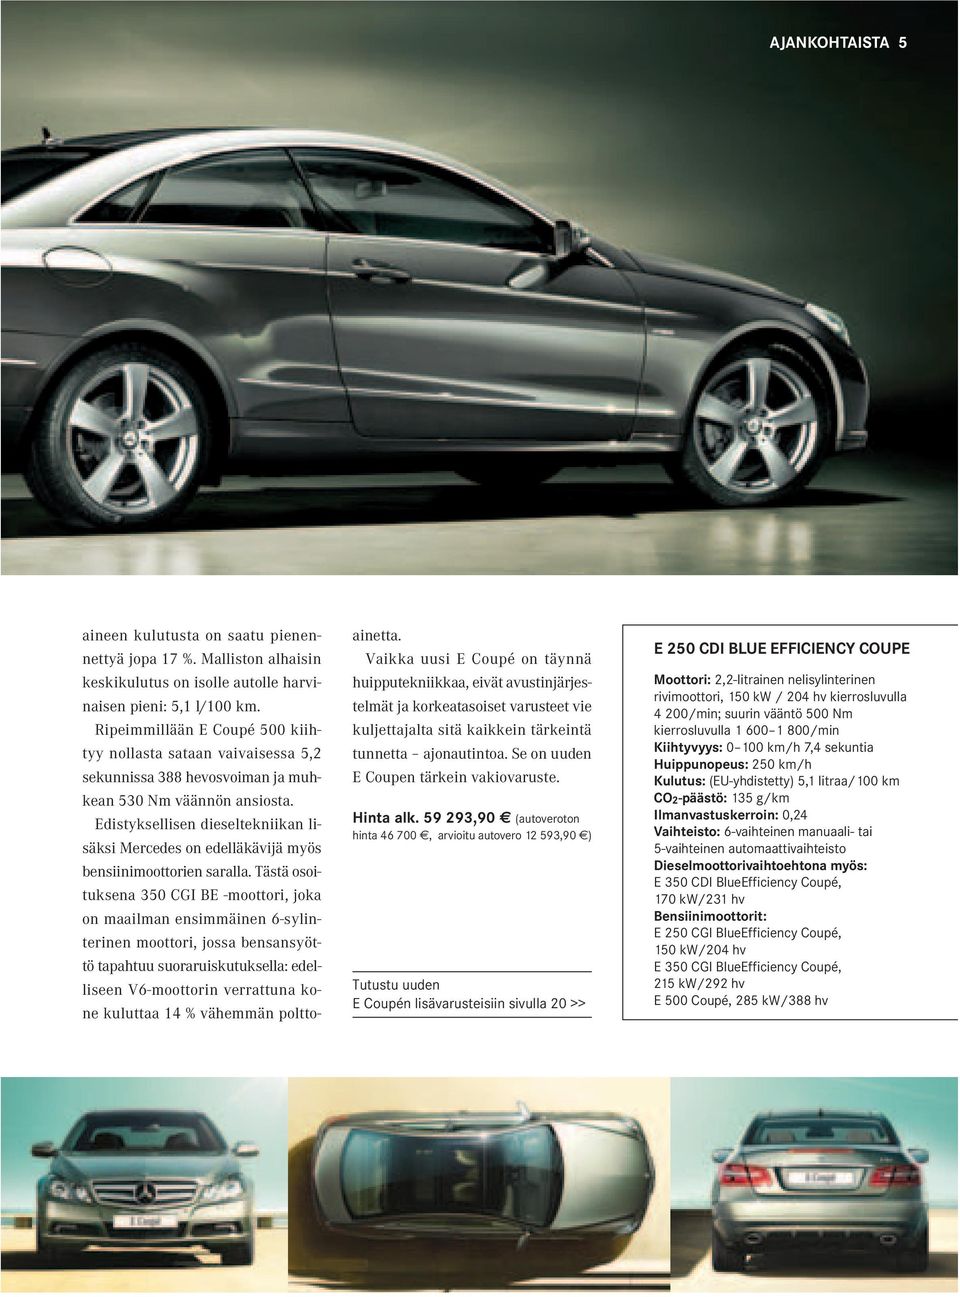 Edistyksellisen dieseltekniikan lisäksi Mercedes on edelläkävijä myös bensiinimoottorien saralla.